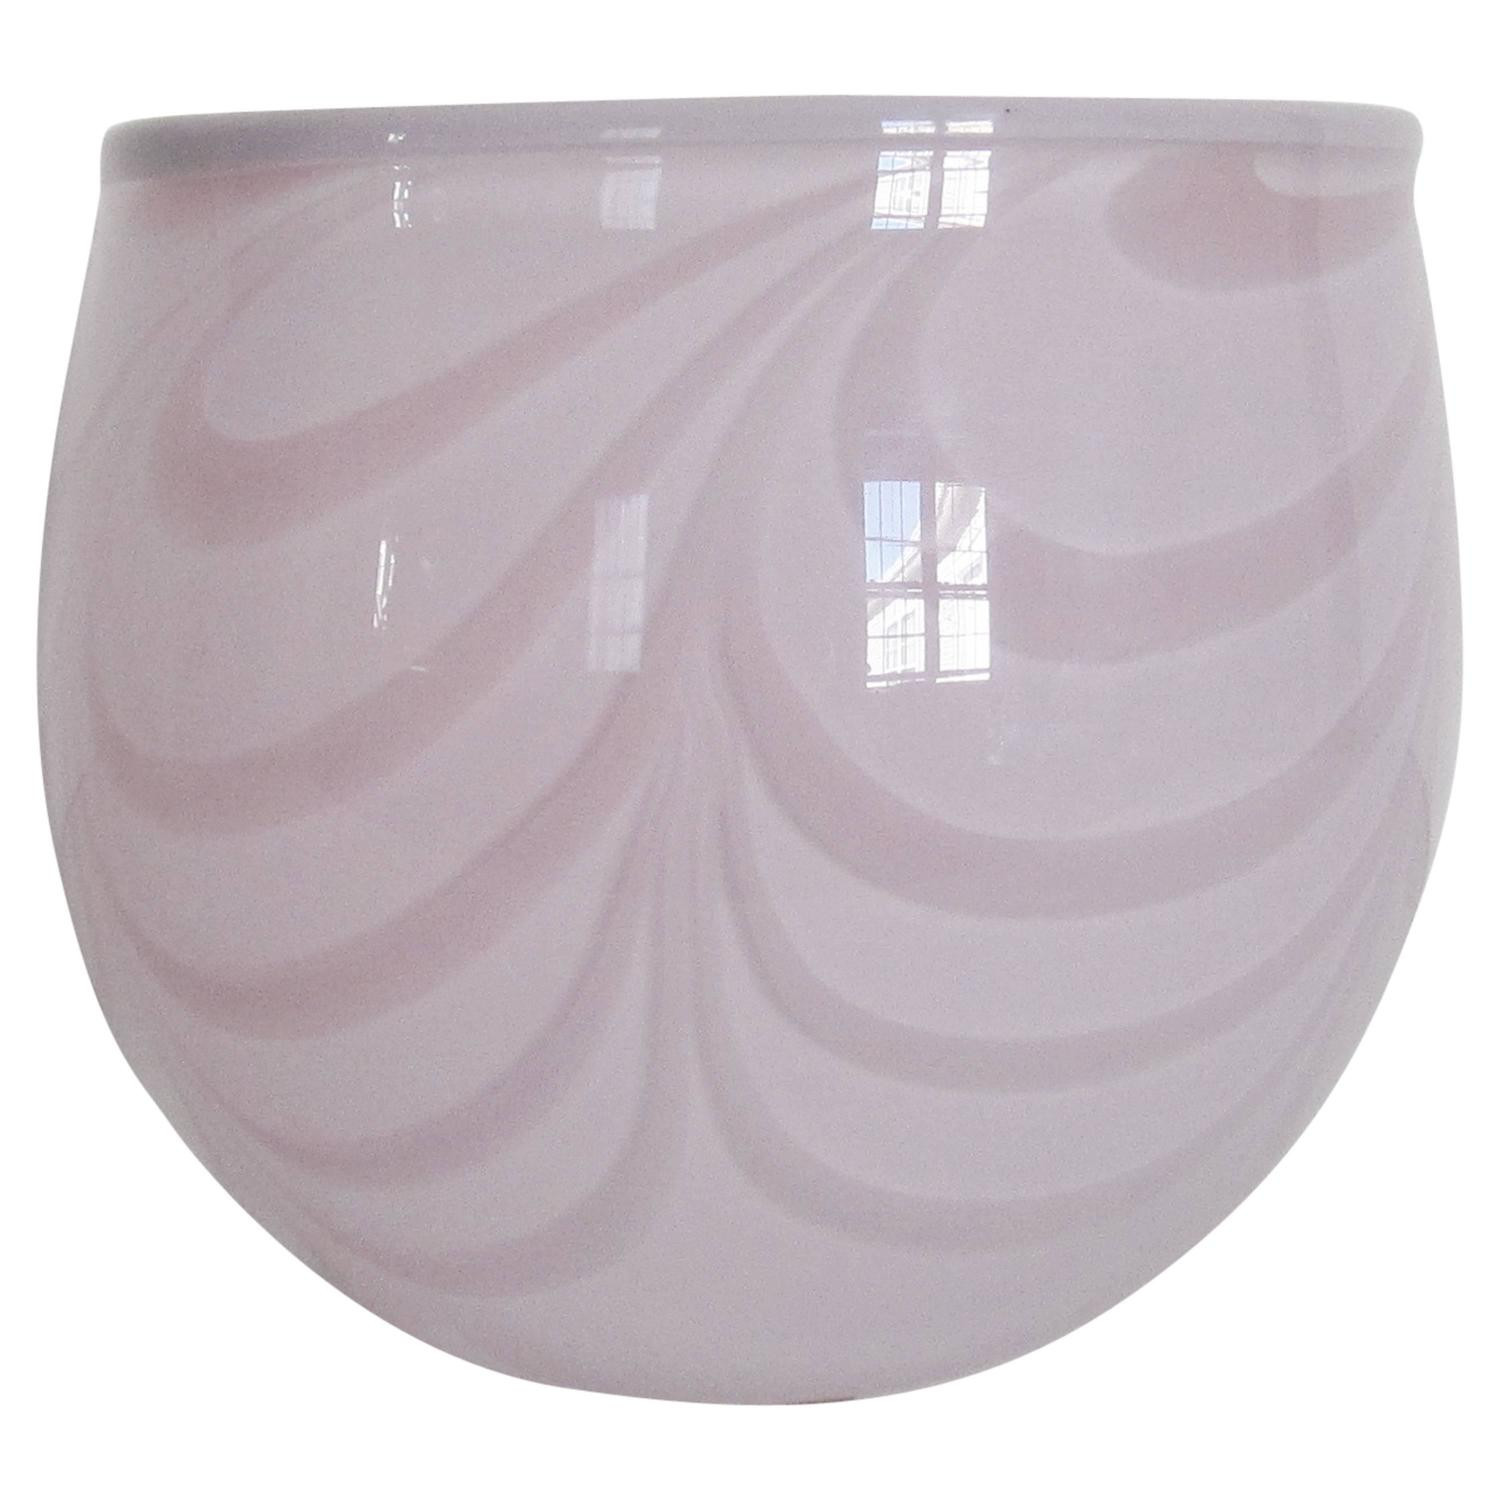 25 Popular Kosta Boda Blue Vase 2024 free download kosta boda blue vase of swedish glass vase by designer kjell engman for sale at 1stdibs for 3415182 z